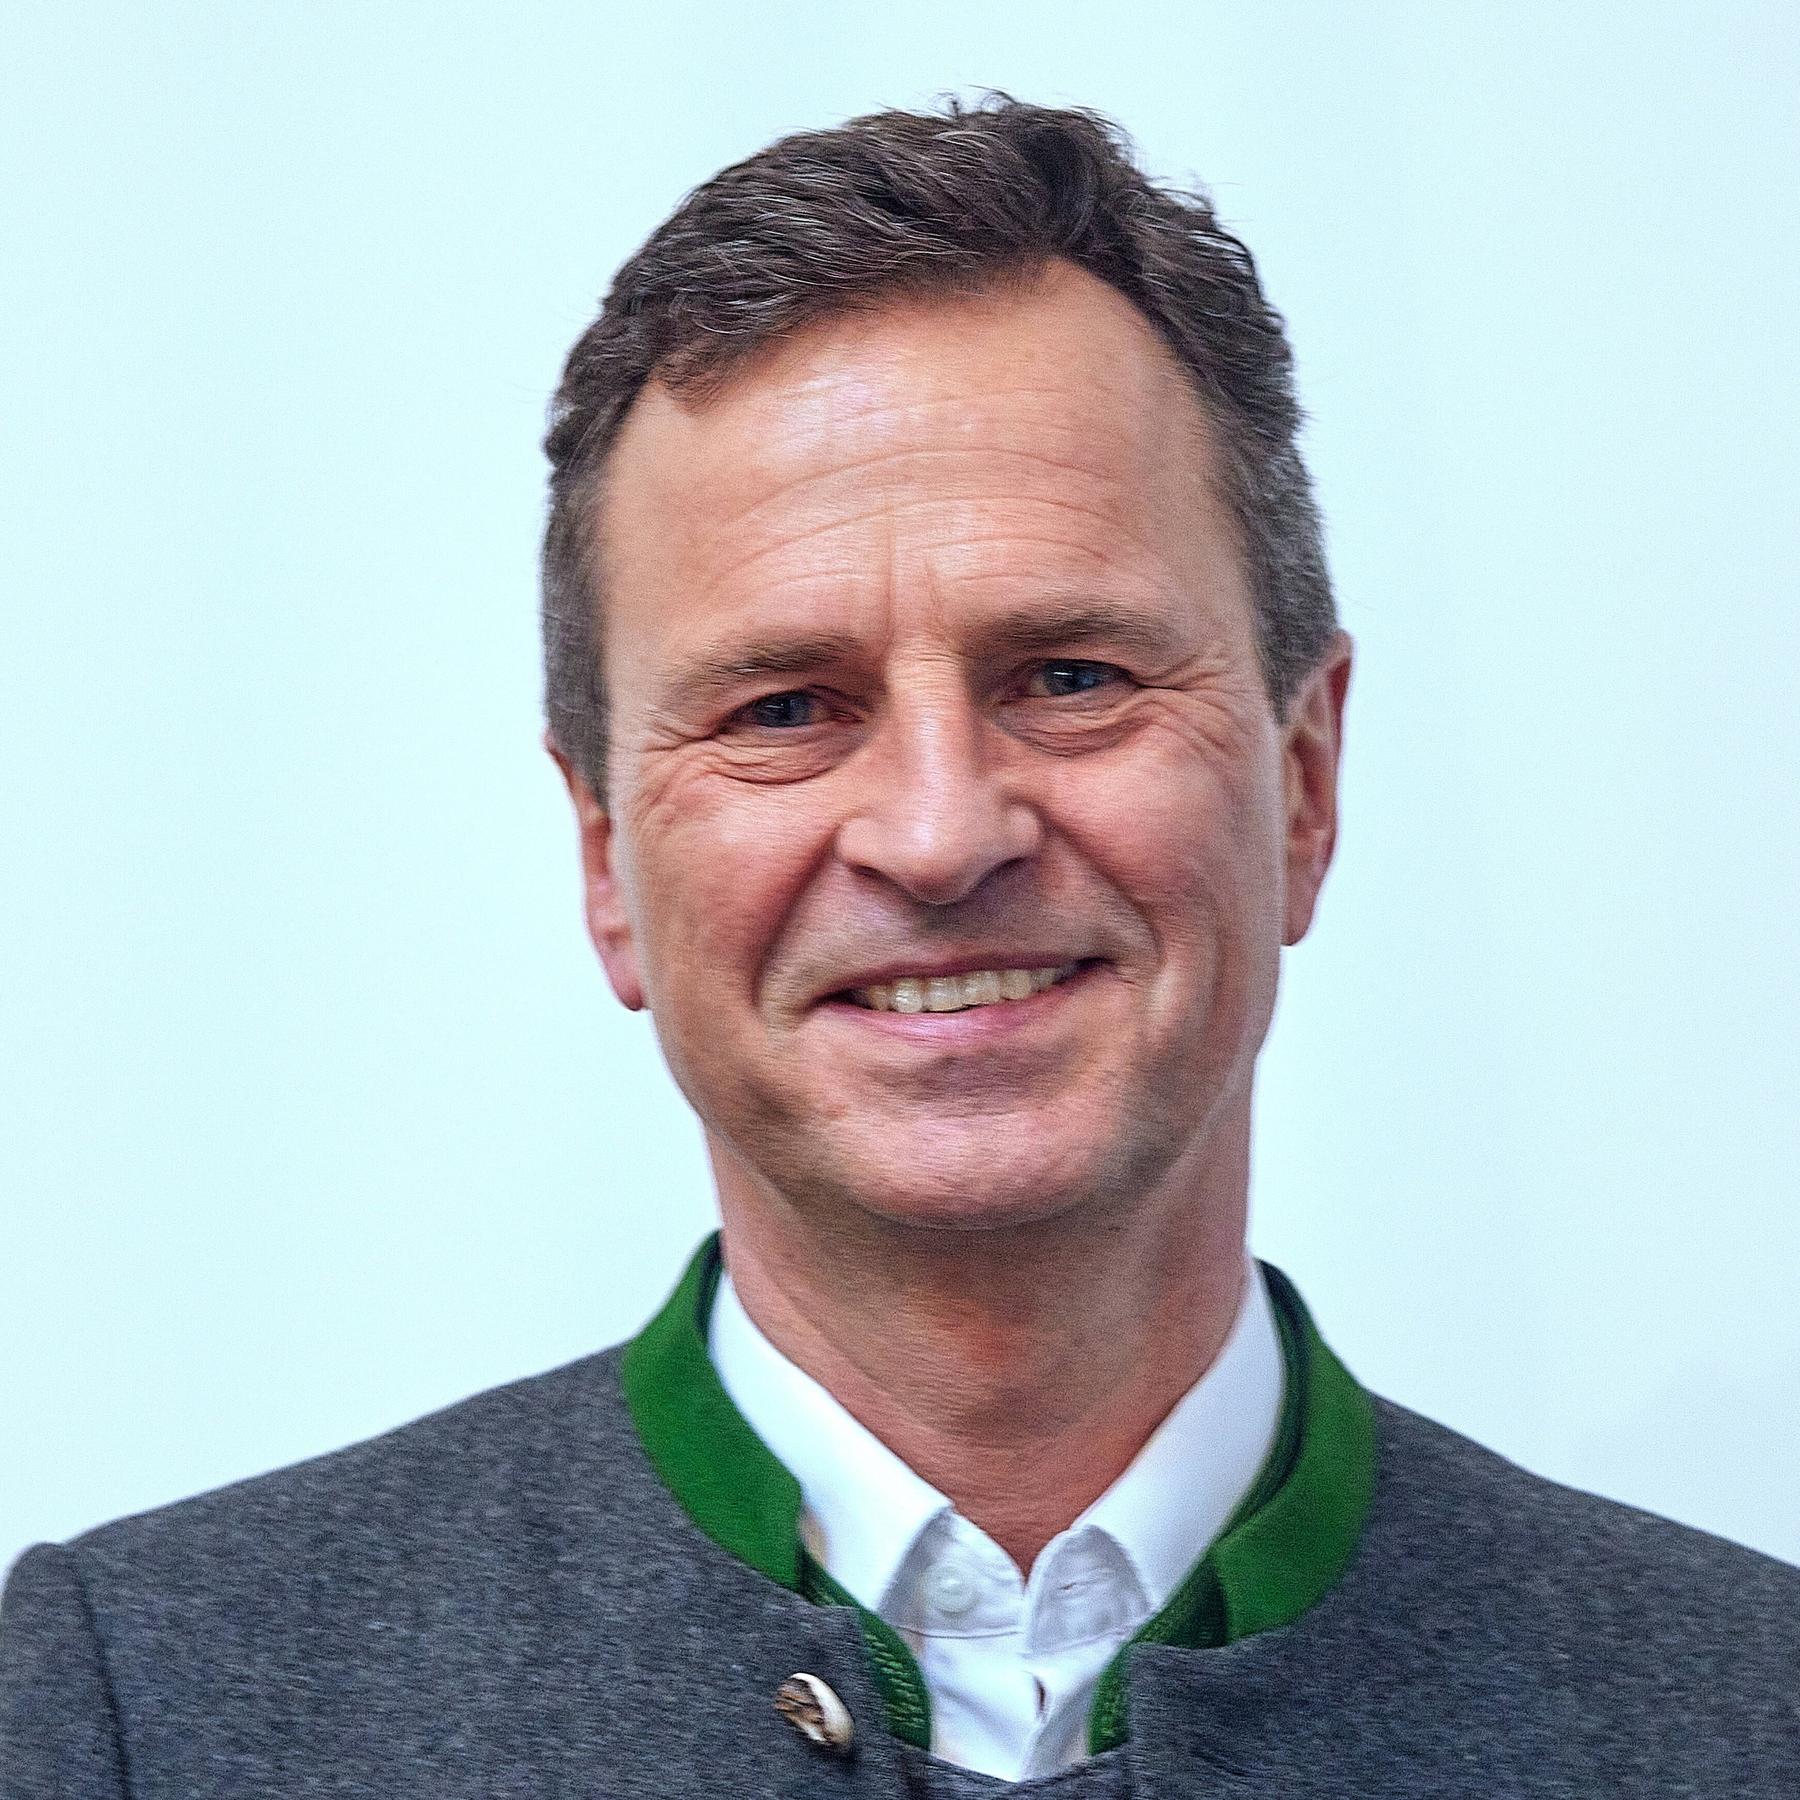 Manfred Gößl, IHK-München-Chef: ”Wir spüren vom Bürokratieabbau nichts”